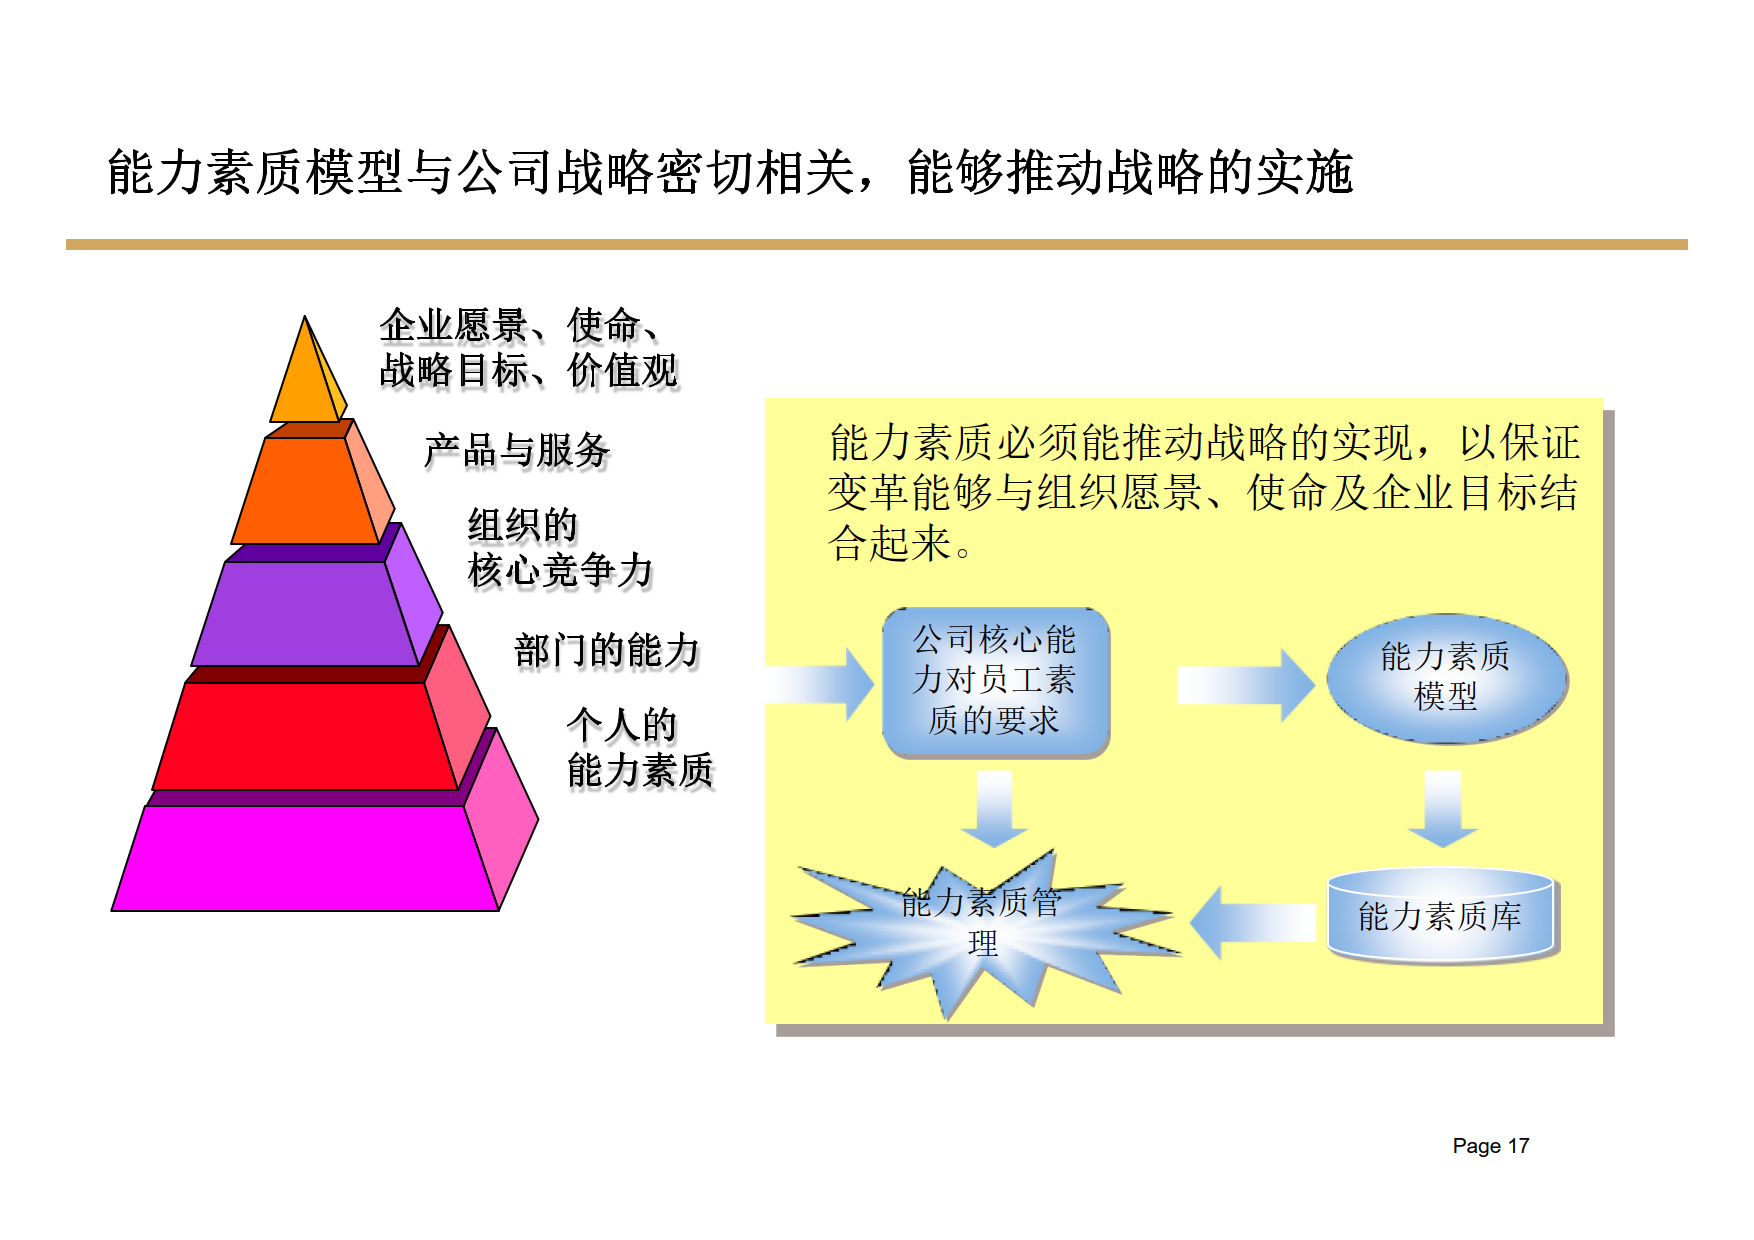 建立以能力素质模型为核心的战略性人力资源管理体系_9.png